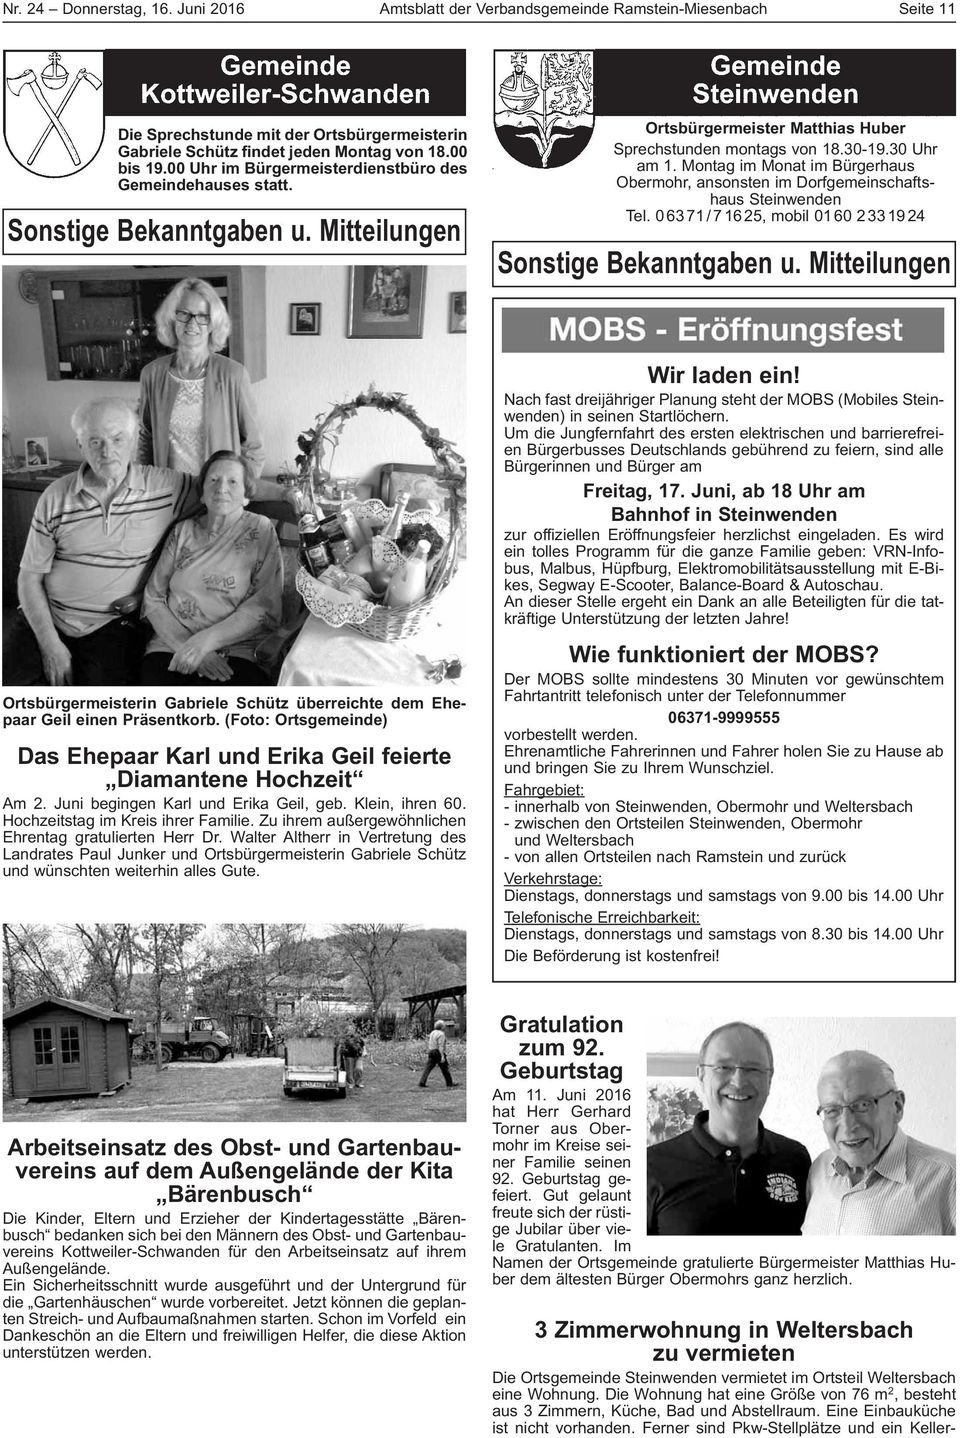 Montag im Monat im Bürgerhaus Obermohr, ansonsten im Dorfgemeinschaftshaus Steinwenden Tel. 06371/71625, mobil 0160 2331924 Sonstige Bekanntgaben u.